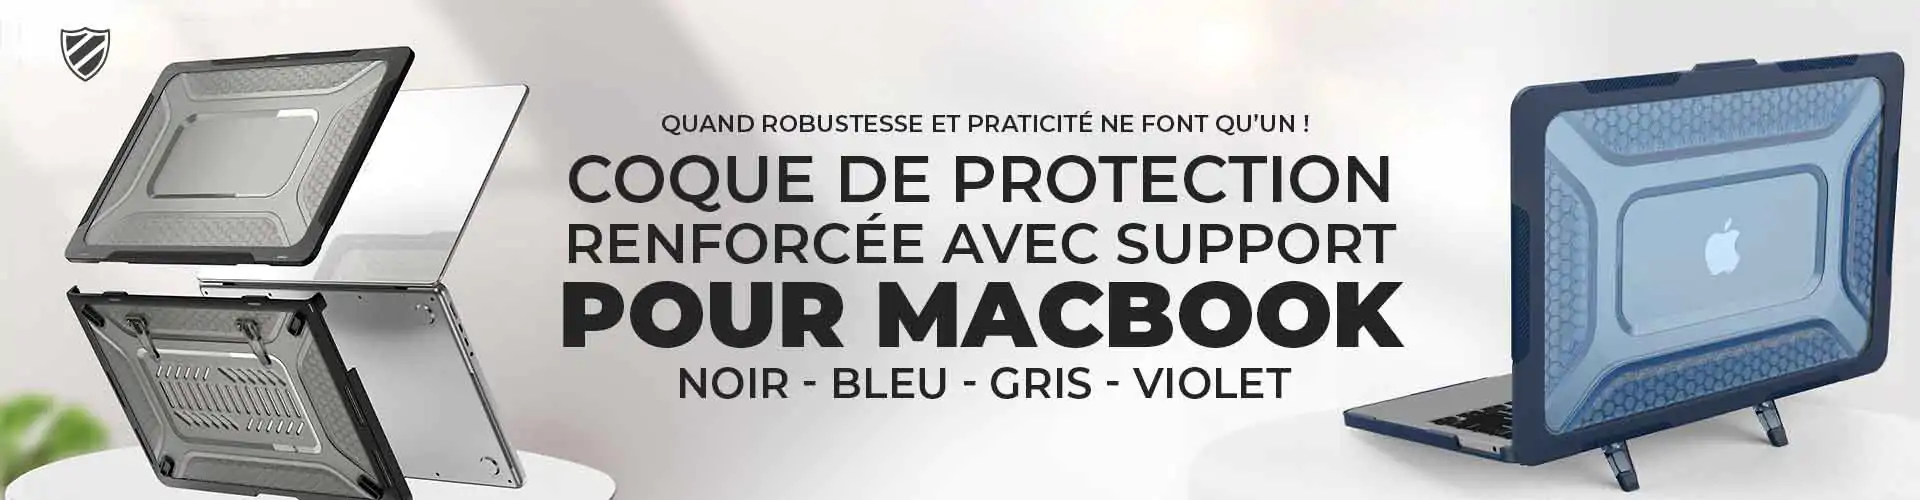 Coque de Protection
Renforcée avec Support
pour macbook